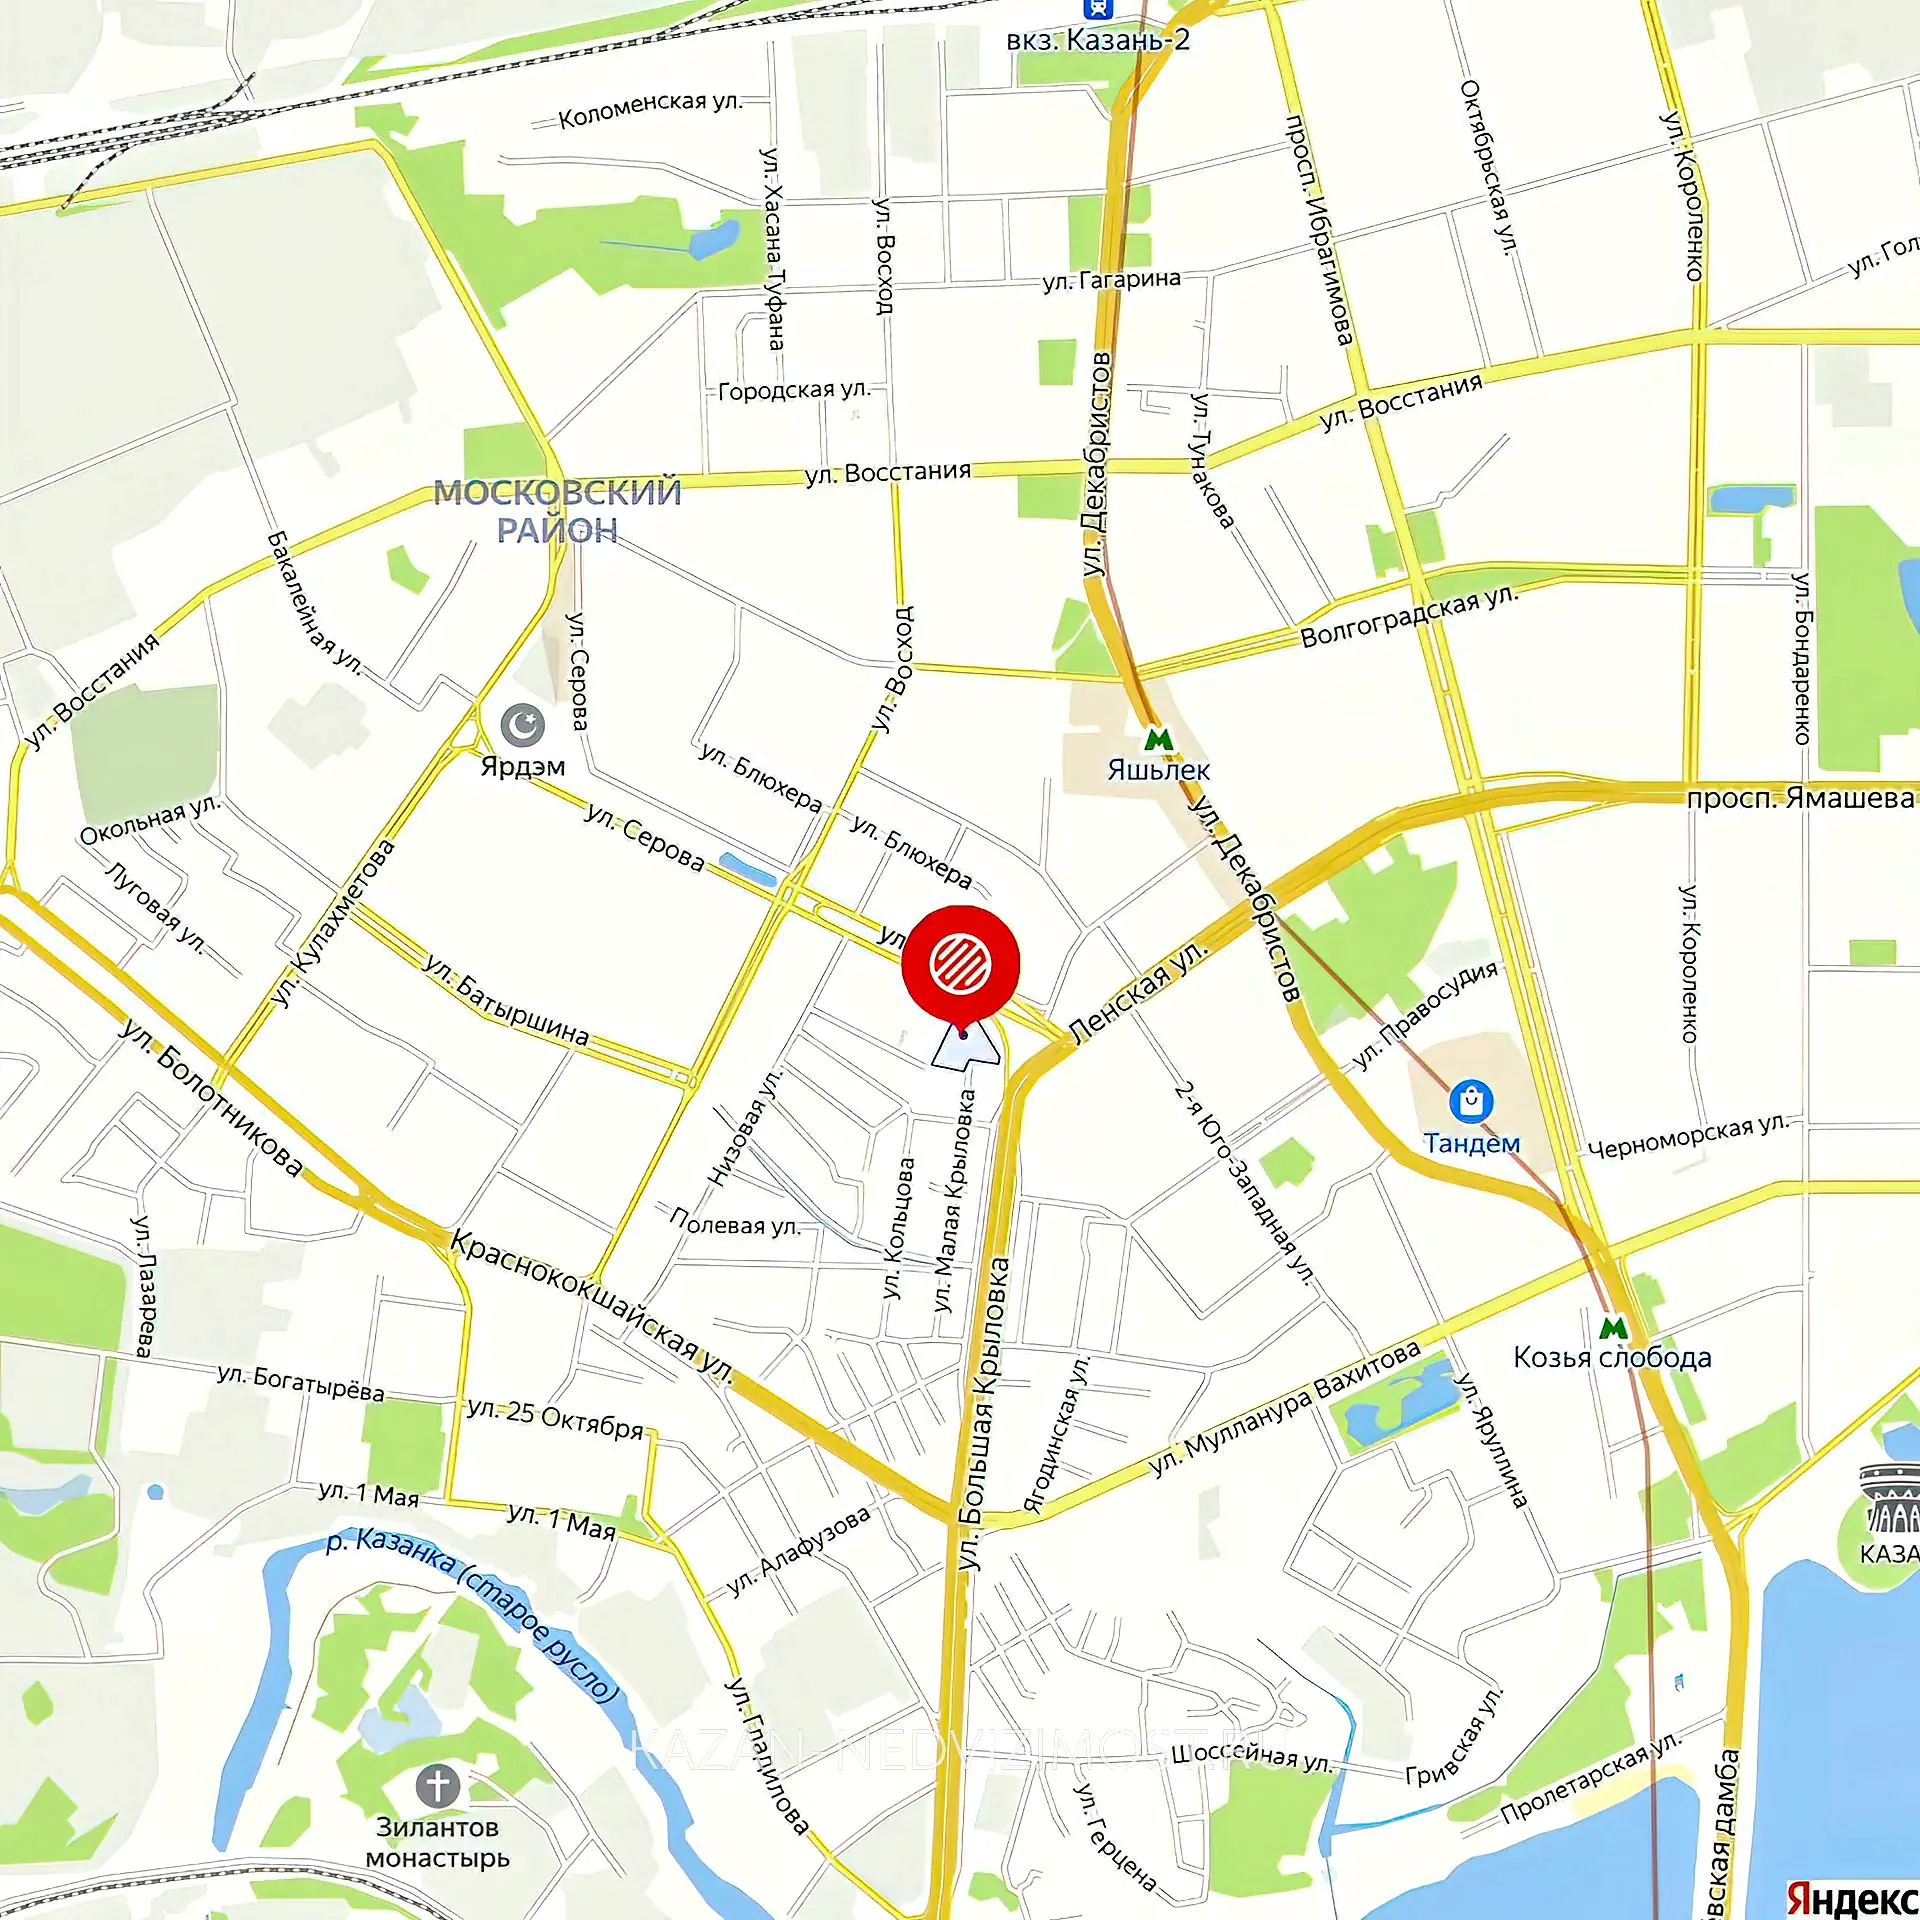 Расположение и маршрут на карте от ЖК Miracle до центра города